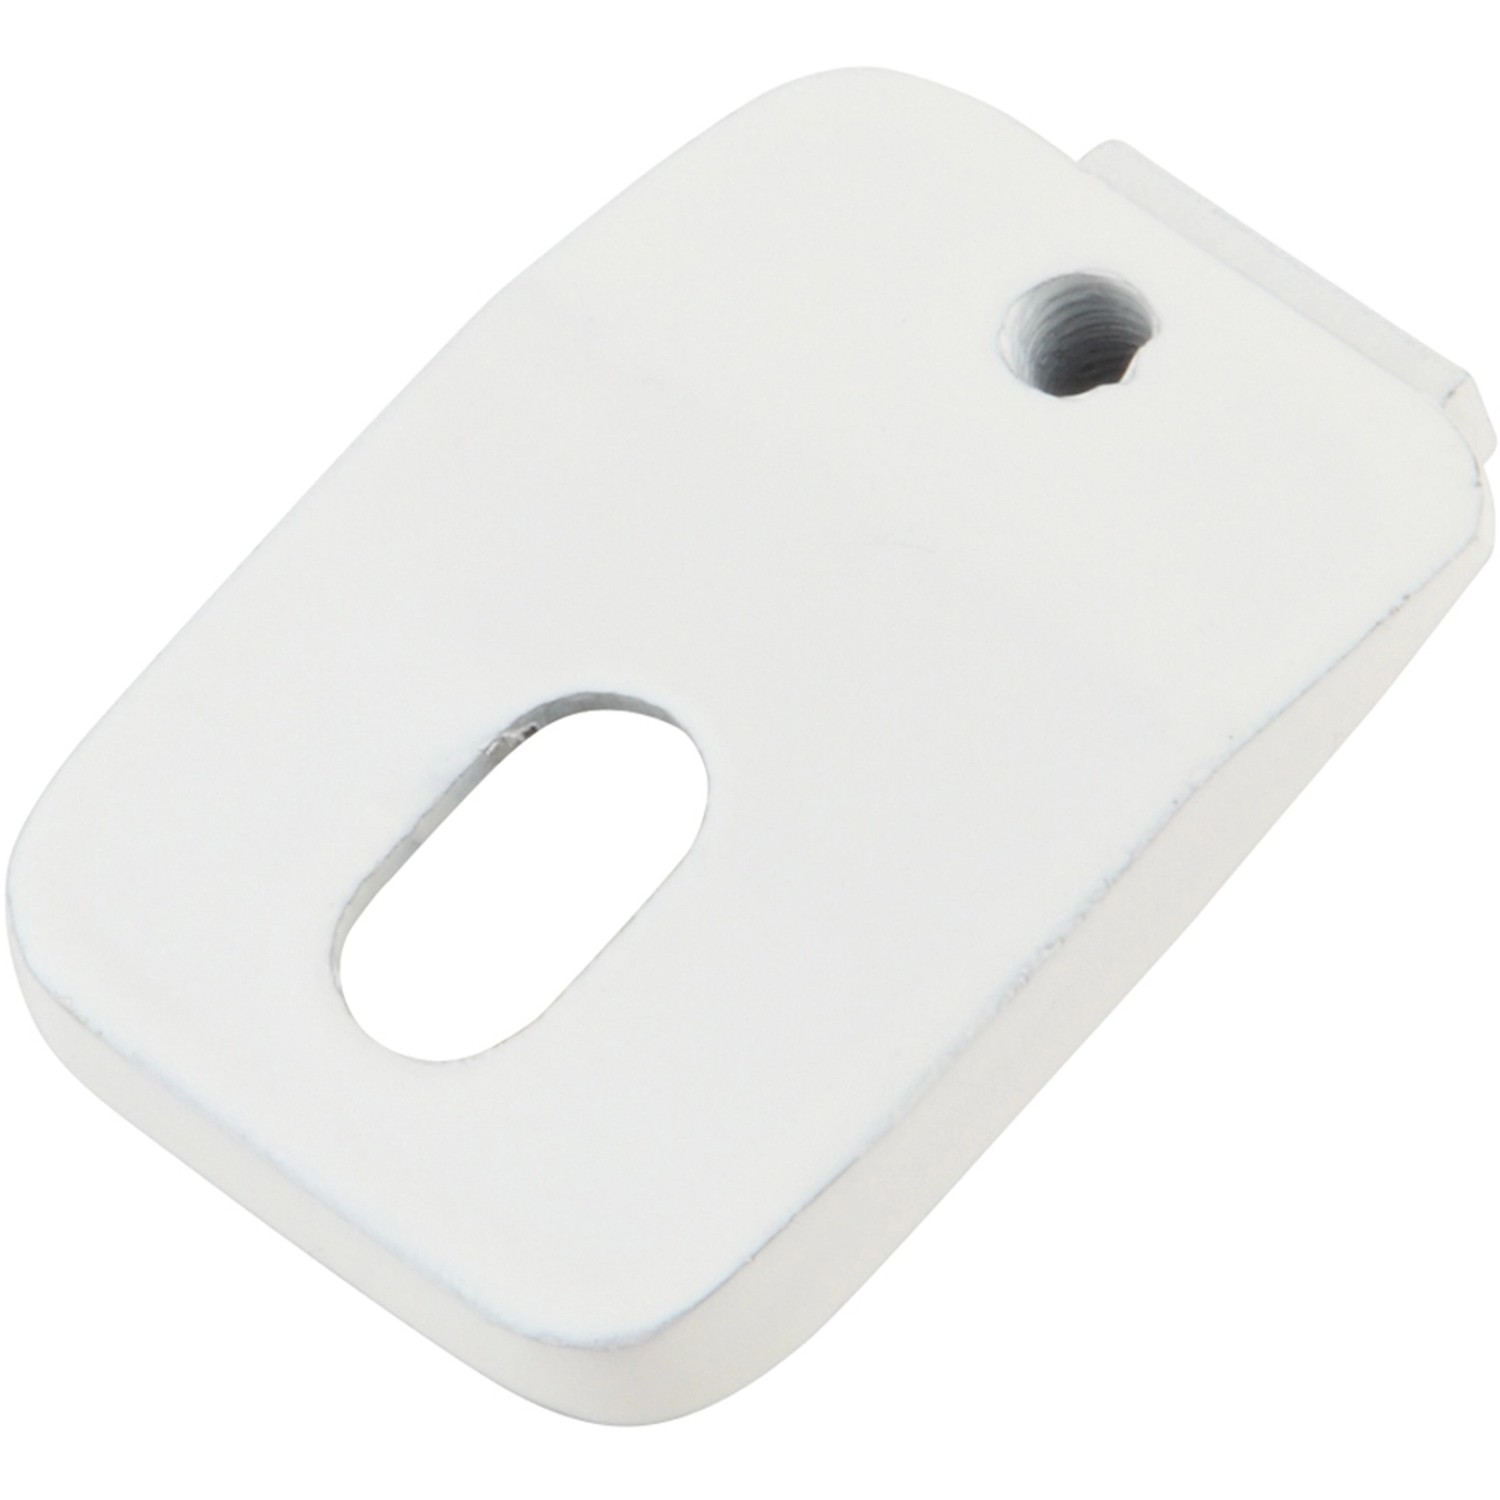 Mydeco Gardinenstange-Deckenmontage Mini Weiß Ø 1,6 cm und 3,2 cm x 1,1 cm günstig online kaufen